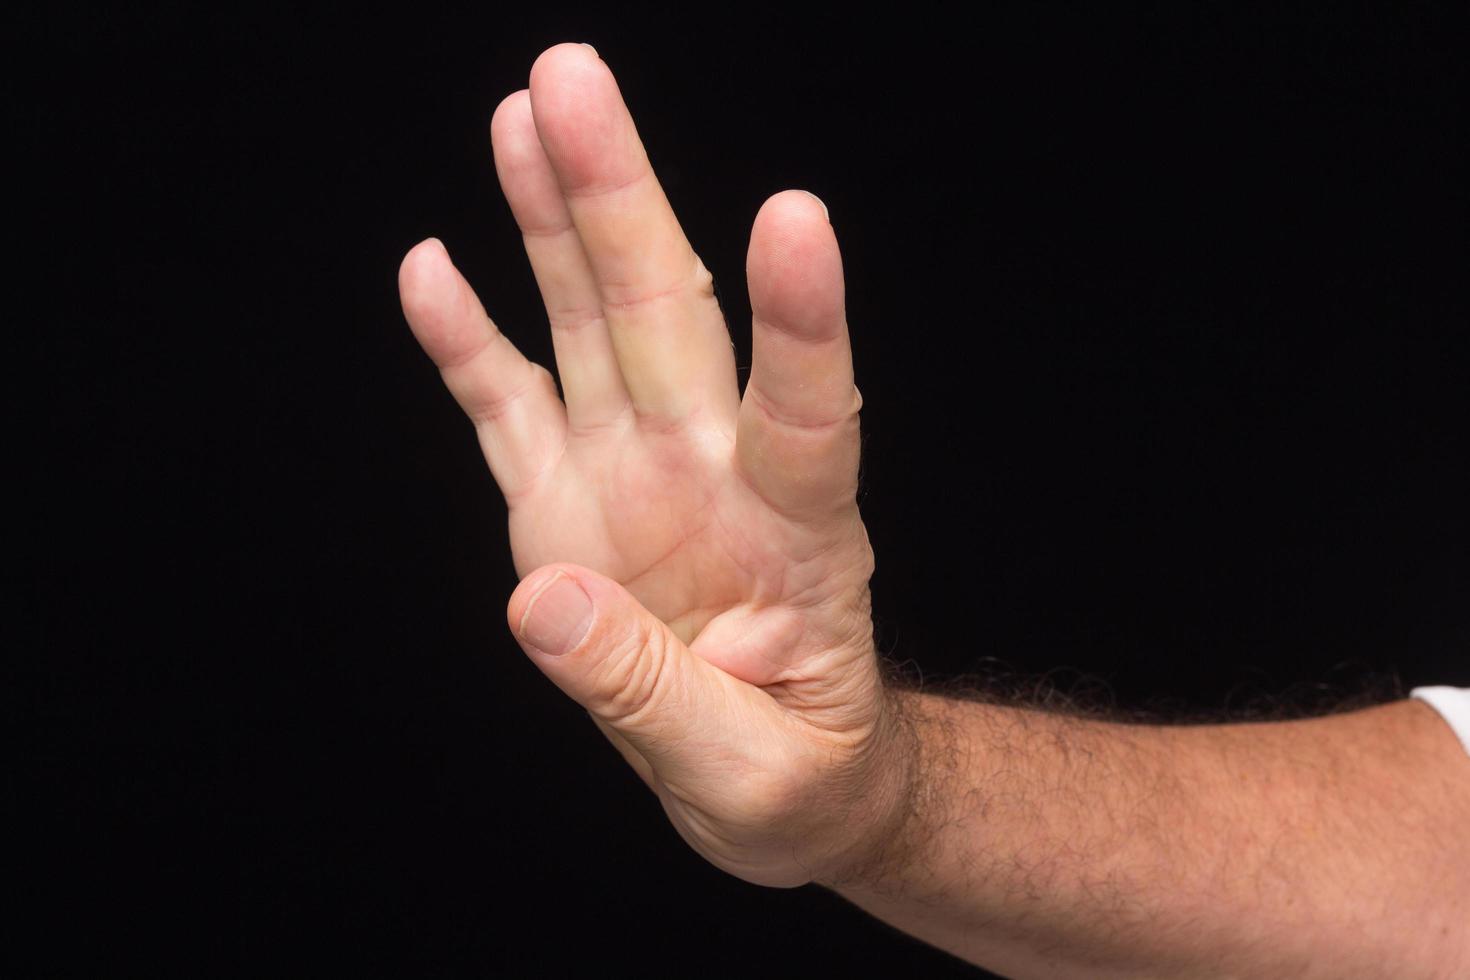 sinais de dedo de um homem adulto foto